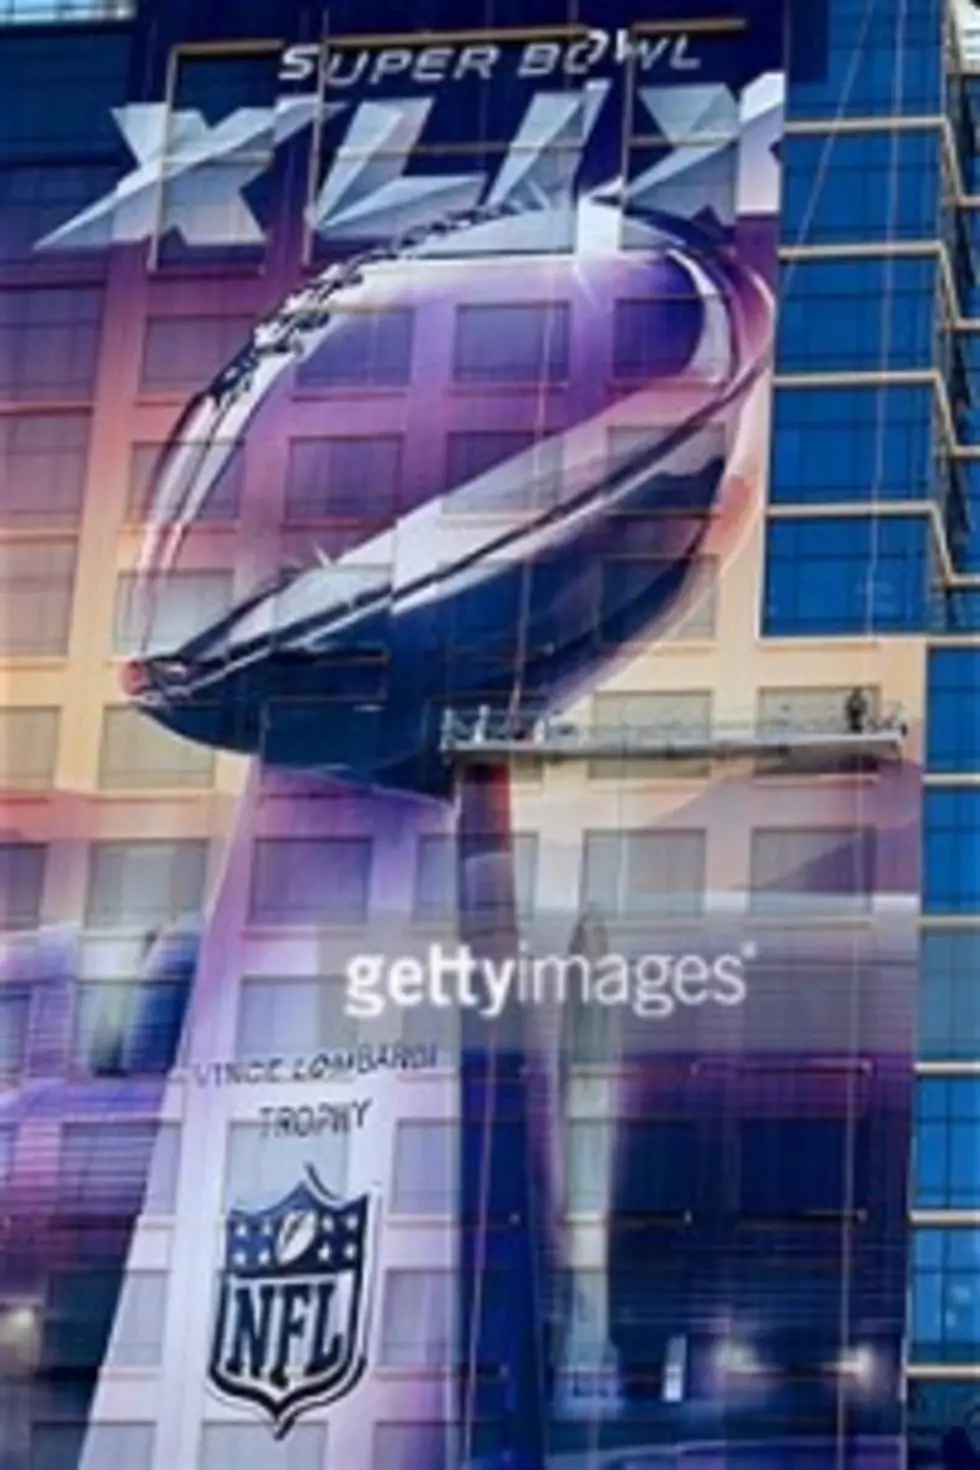 Super Bowl 49 Sets TV Viewership Record